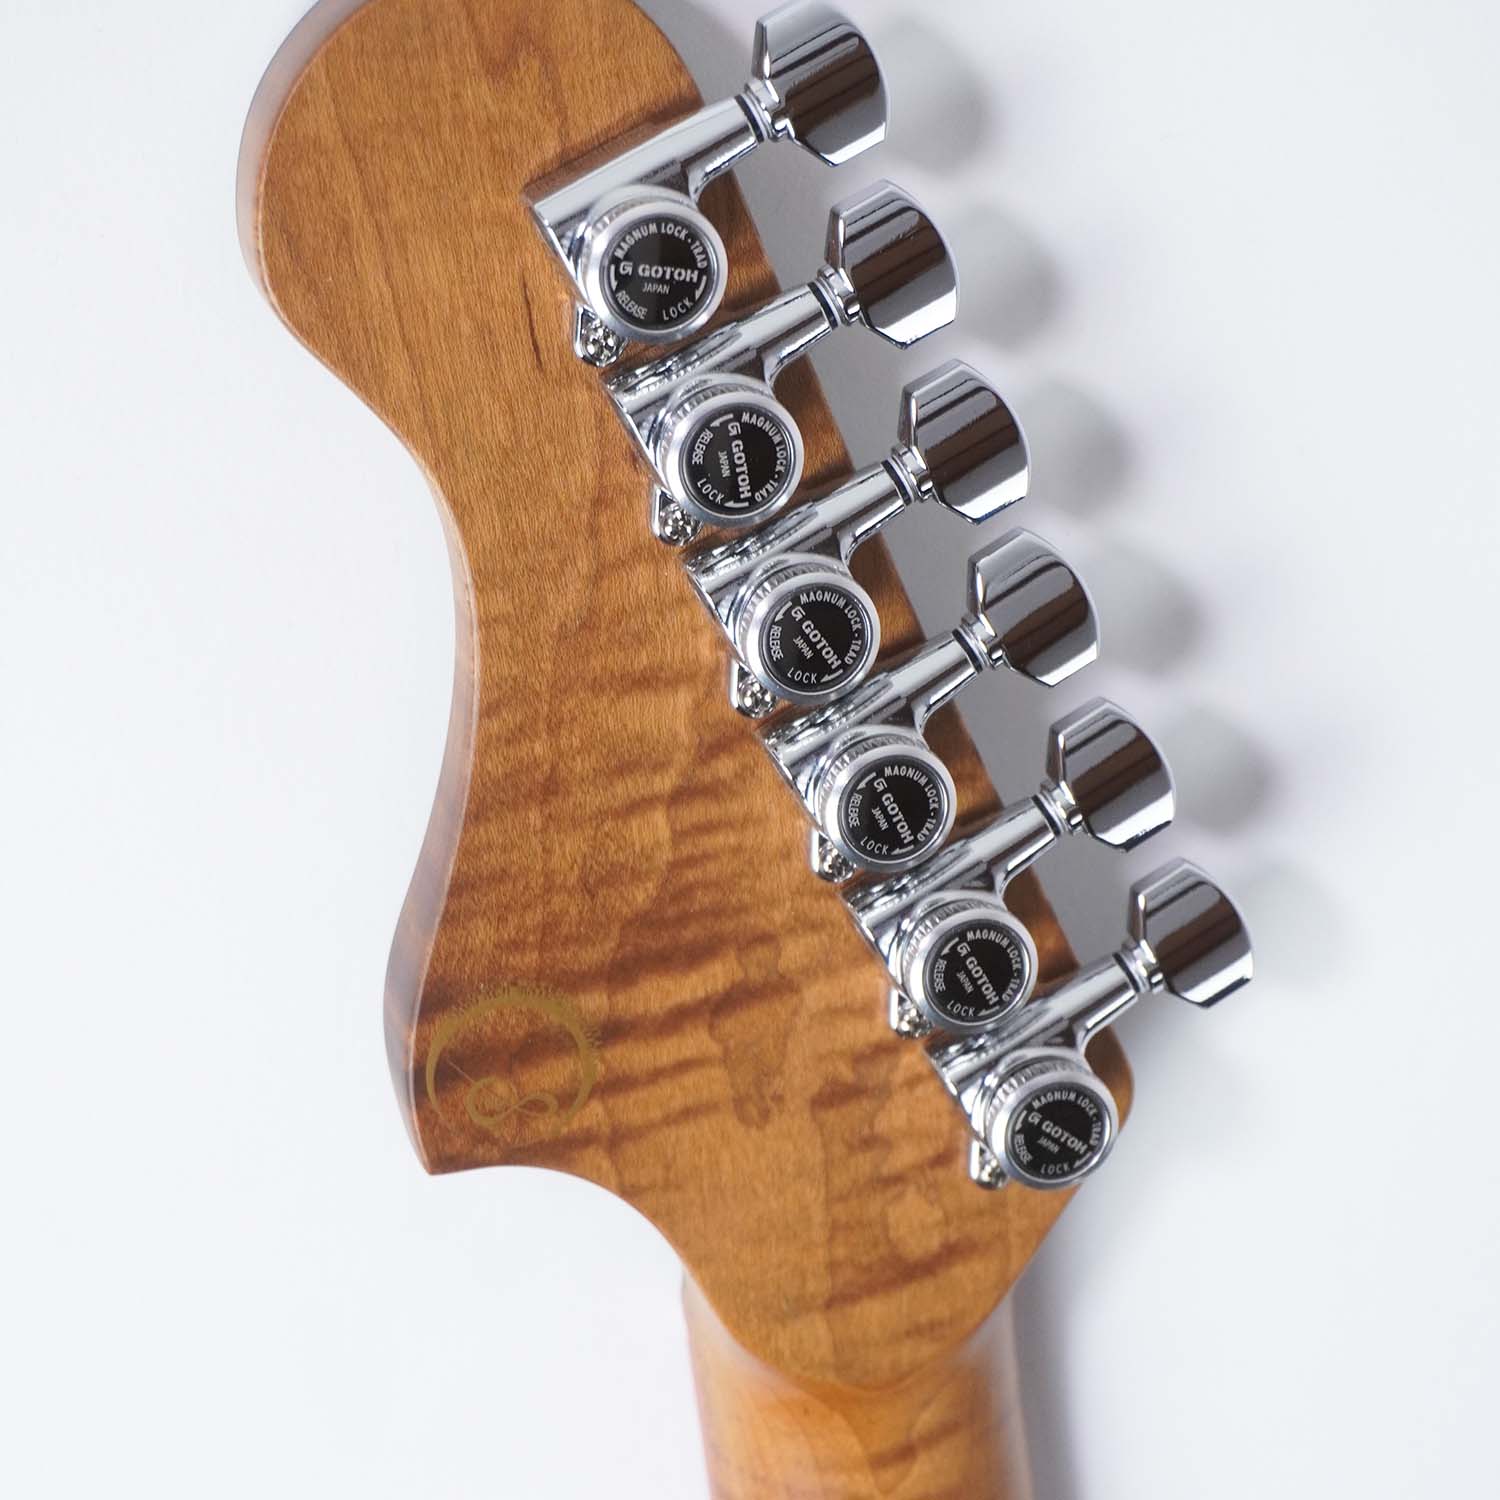 Full Order | Sago New Material Guitars